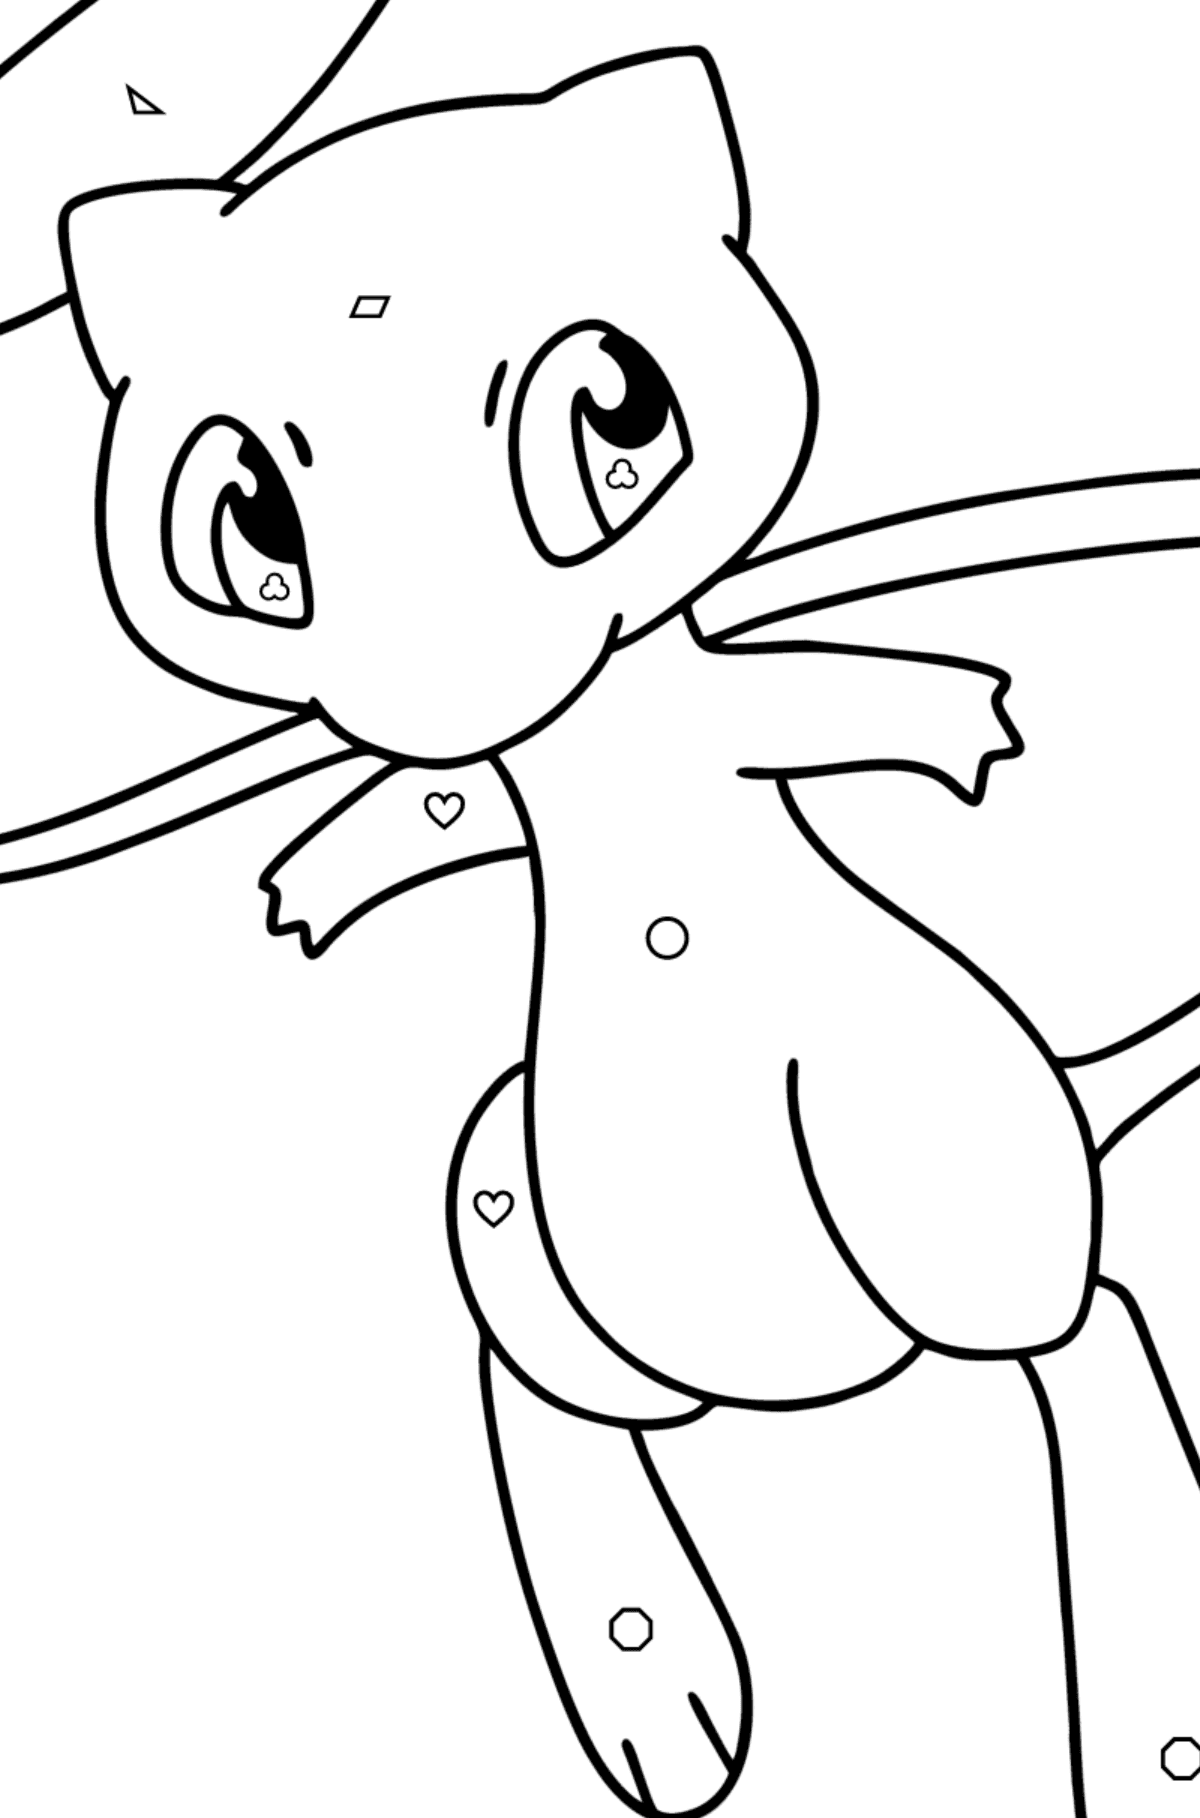 Kleurplaat Pokémon Go Mew - Kleuren met geometrische figuren voor kinderen